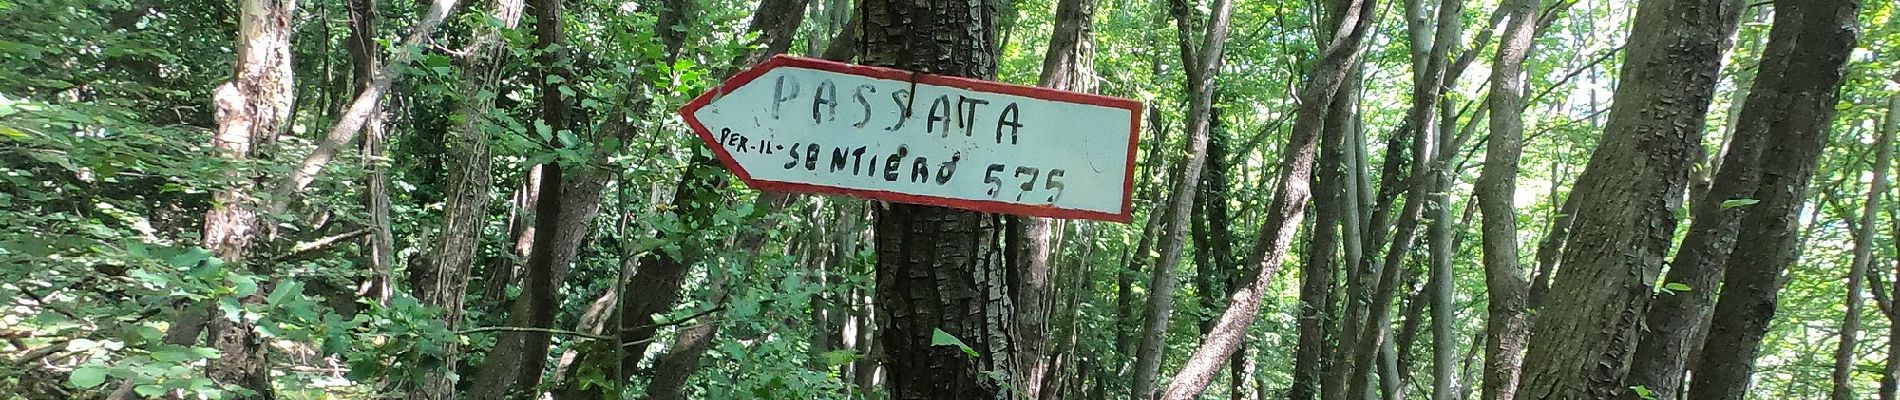 Trail On foot Rota d'Imagna - Sentiero 586: Rota d'Imagna - La Passata - Photo